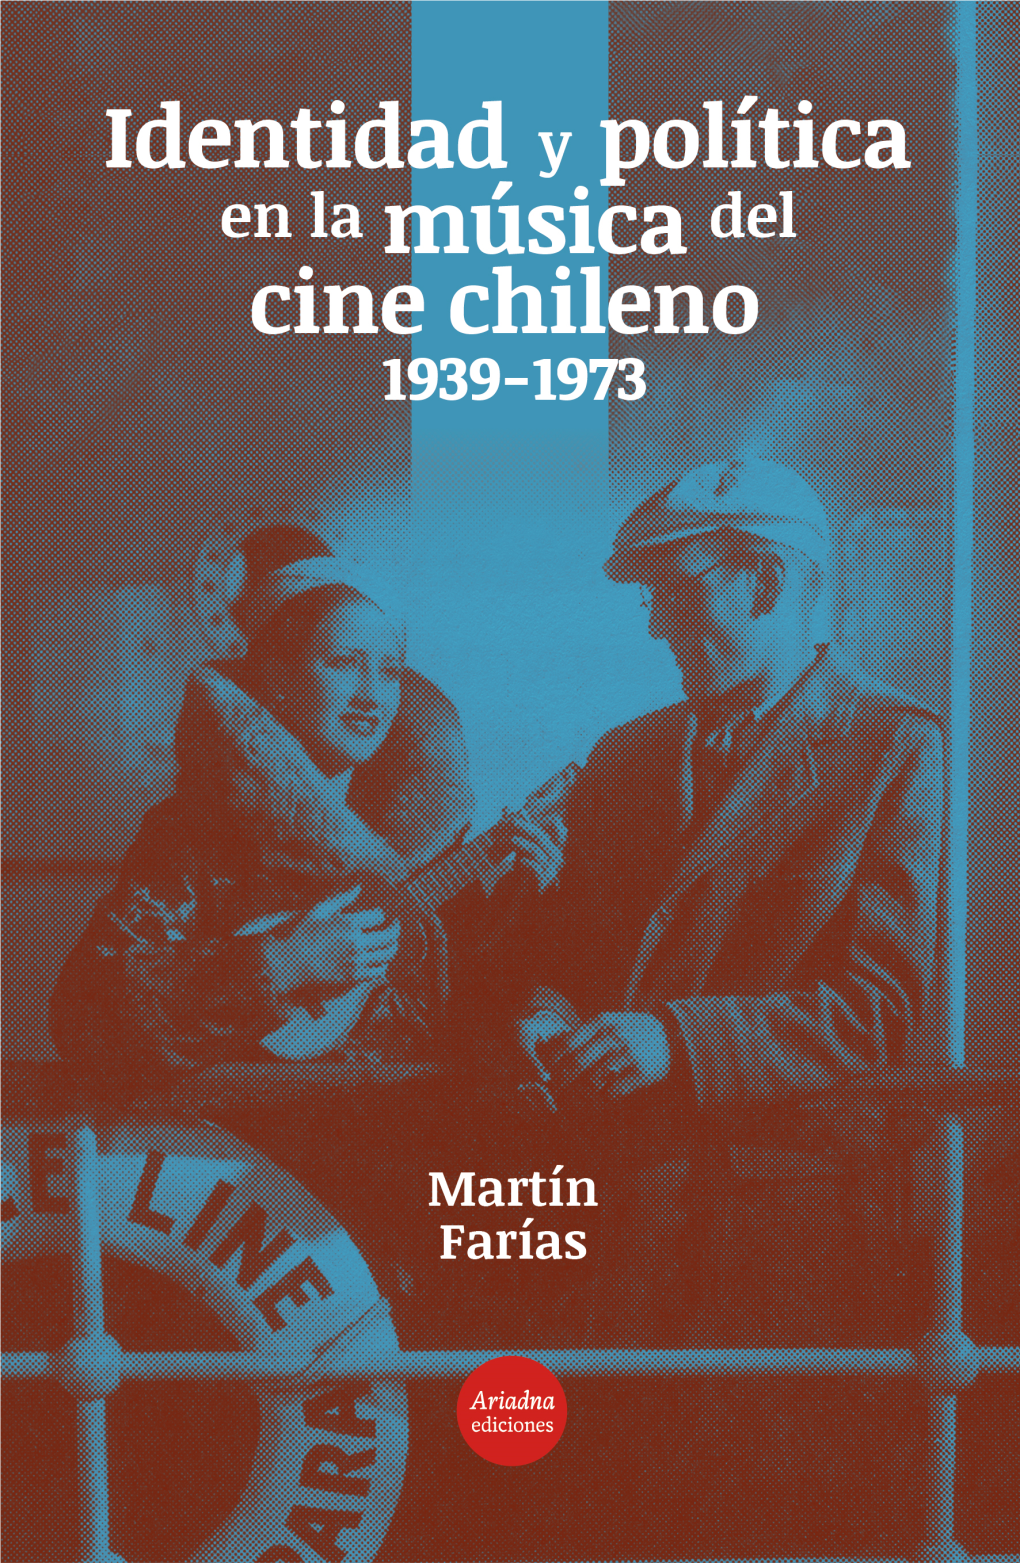 Identidad Y Política En La Música Del Cine Chileno (1939-1973) Martín Farías Identidad Y Política En La Música Del Cine Chileno (1939-1973) Martín Farías